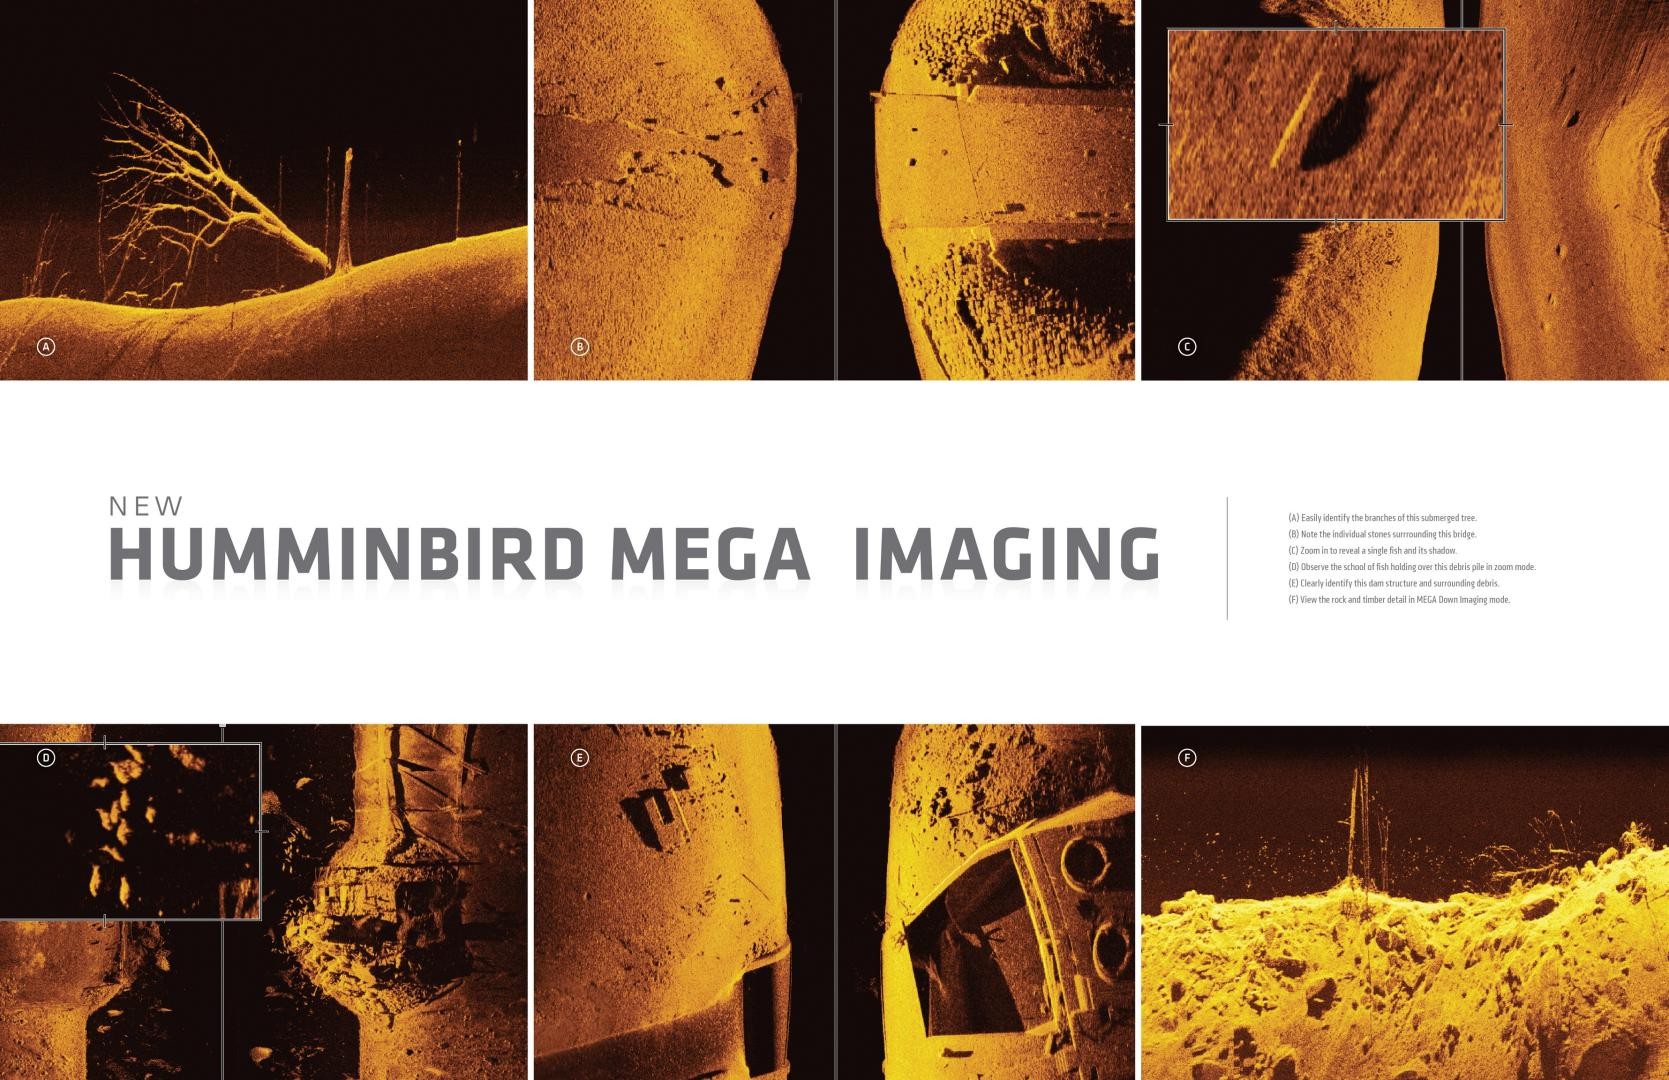 Alcune immagini che mettono in risalto la chiarezza e il dettaglio di MEGA Imaging, di Humminbird